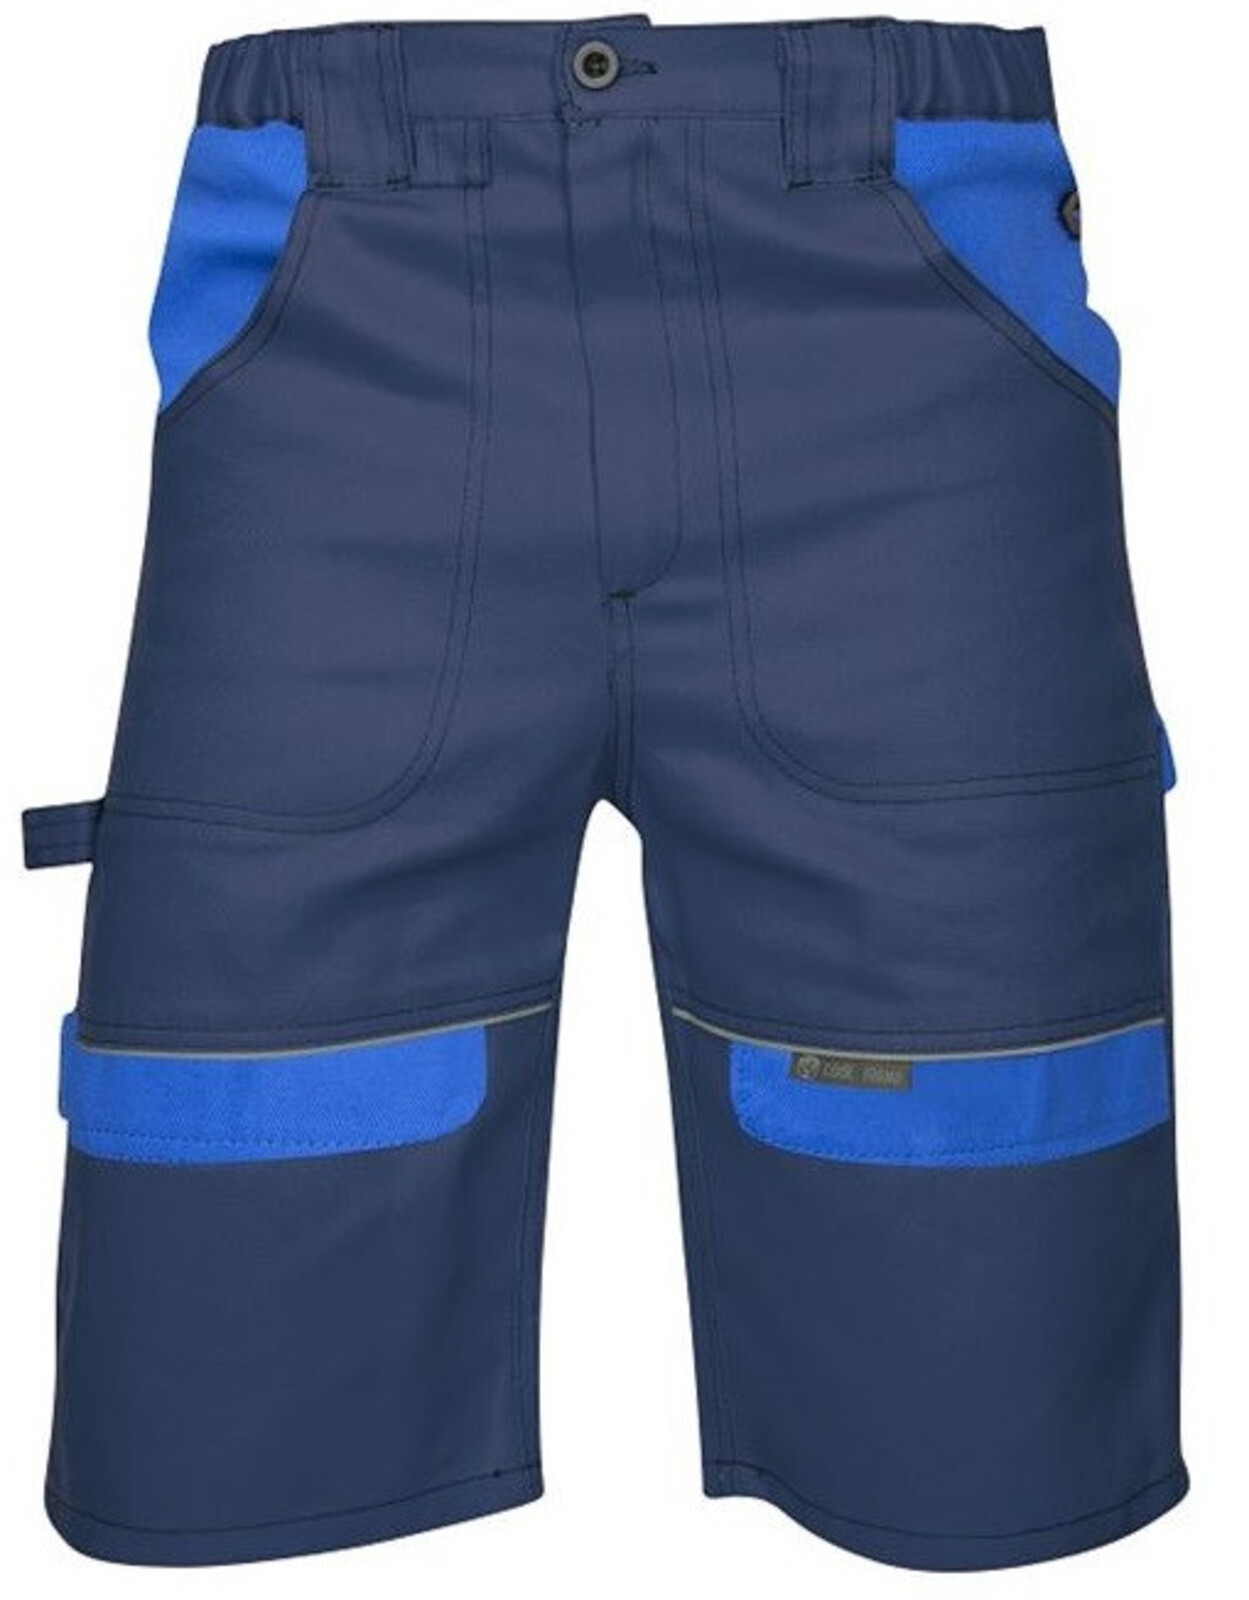 Pánske montérkové šortky Ardon Cool Trend - veľkosť: 54, farba: tmavomodrá/svetlomodrá